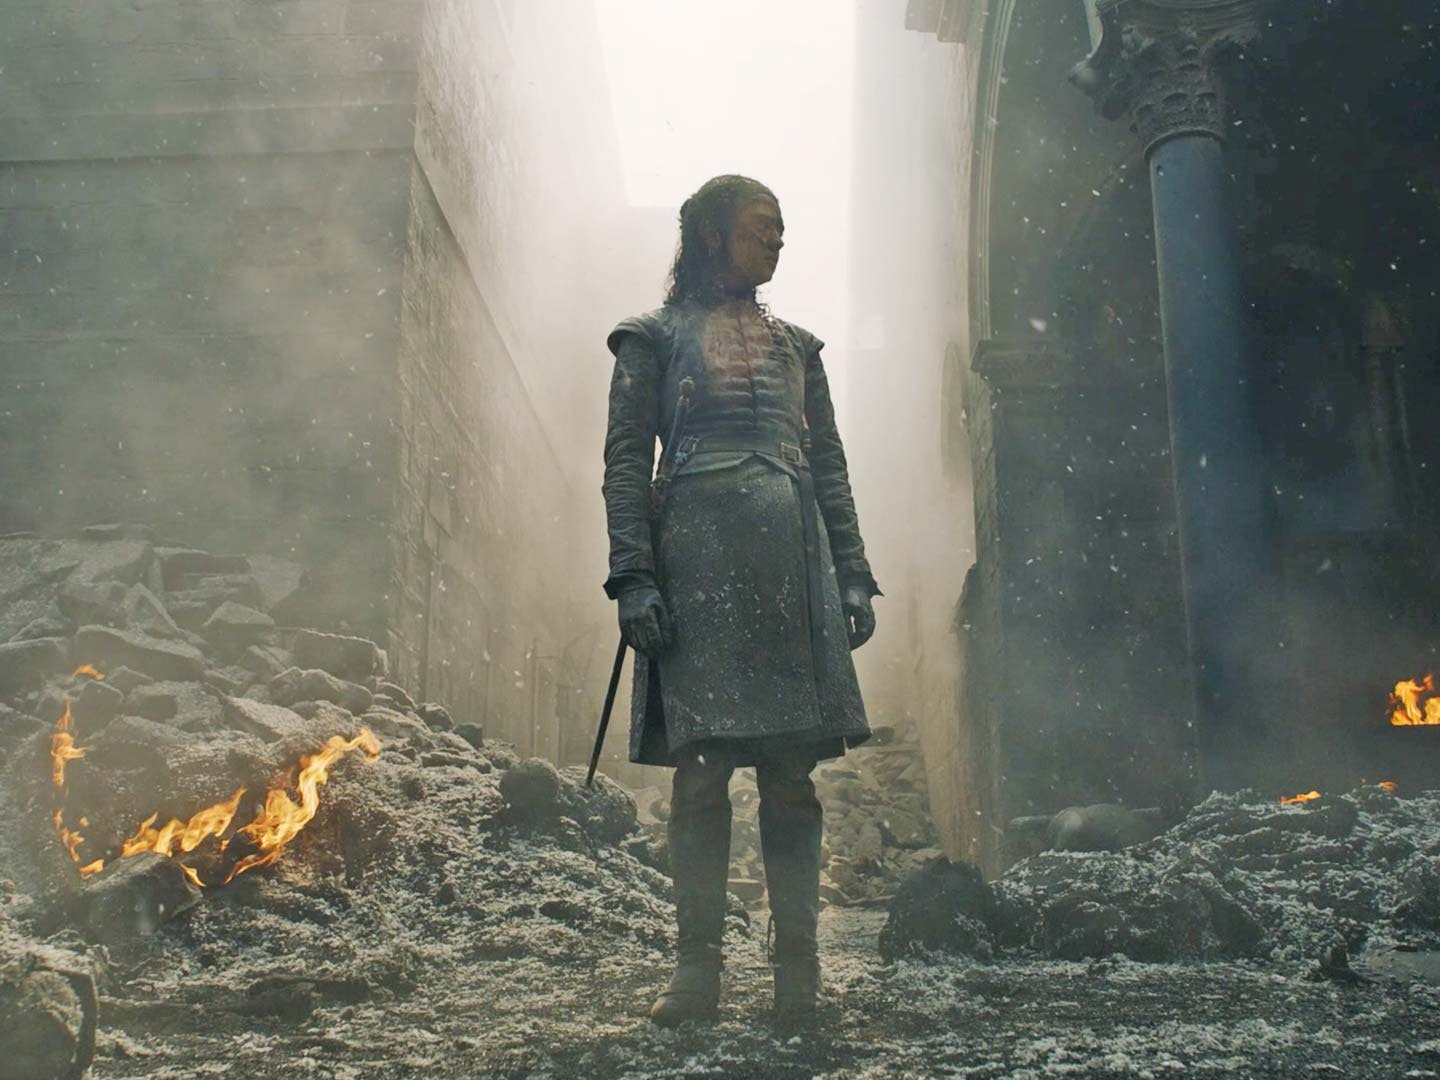 Jon Snow Meets Arya Stark  In Got Season 8 Wallpapers